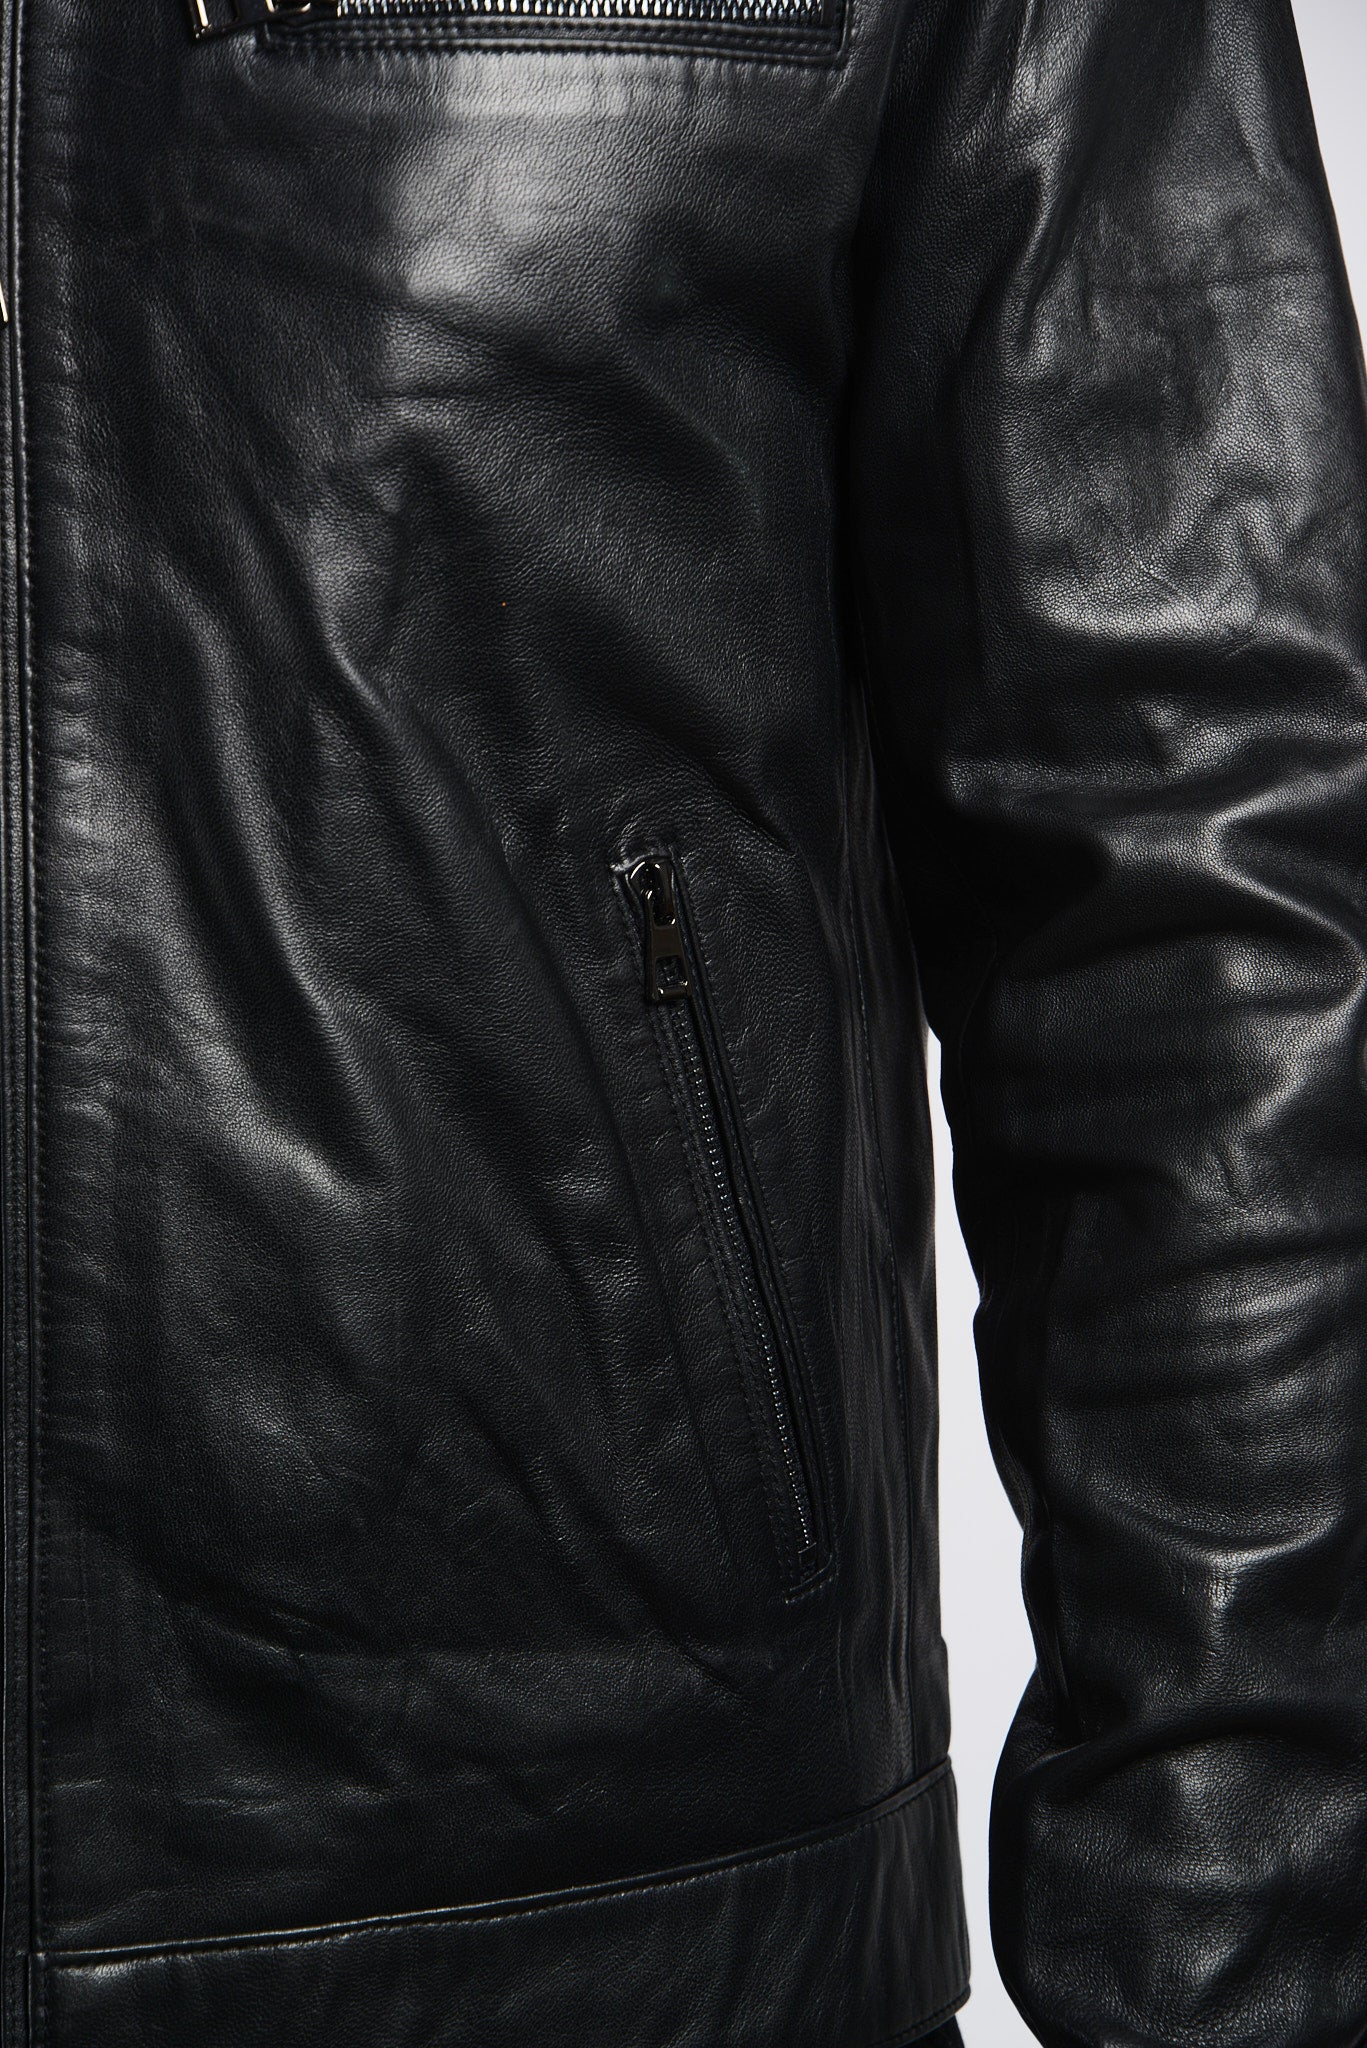 Holloway Bomber Leather Jacket